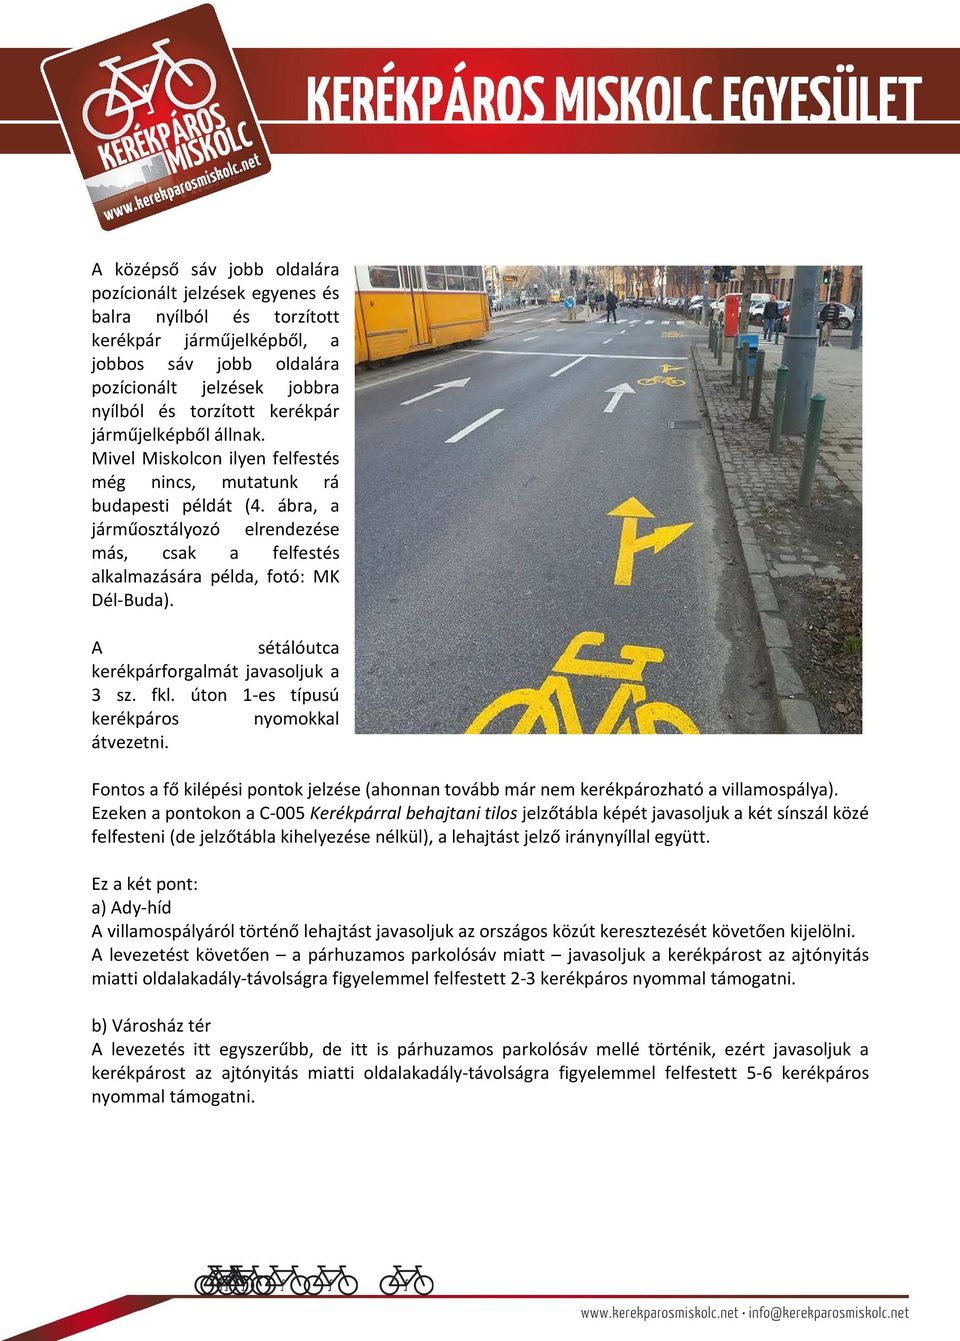 A sétálóutca kerékpárforgalmát javasoljuk a 3 sz. fkl. úton 1-es típusú kerékpáros nyomokkal átvezetni. Fontos a fő kilépési pontok jelzése (ahonnan tovább már nem kerékpározható a villamospálya).